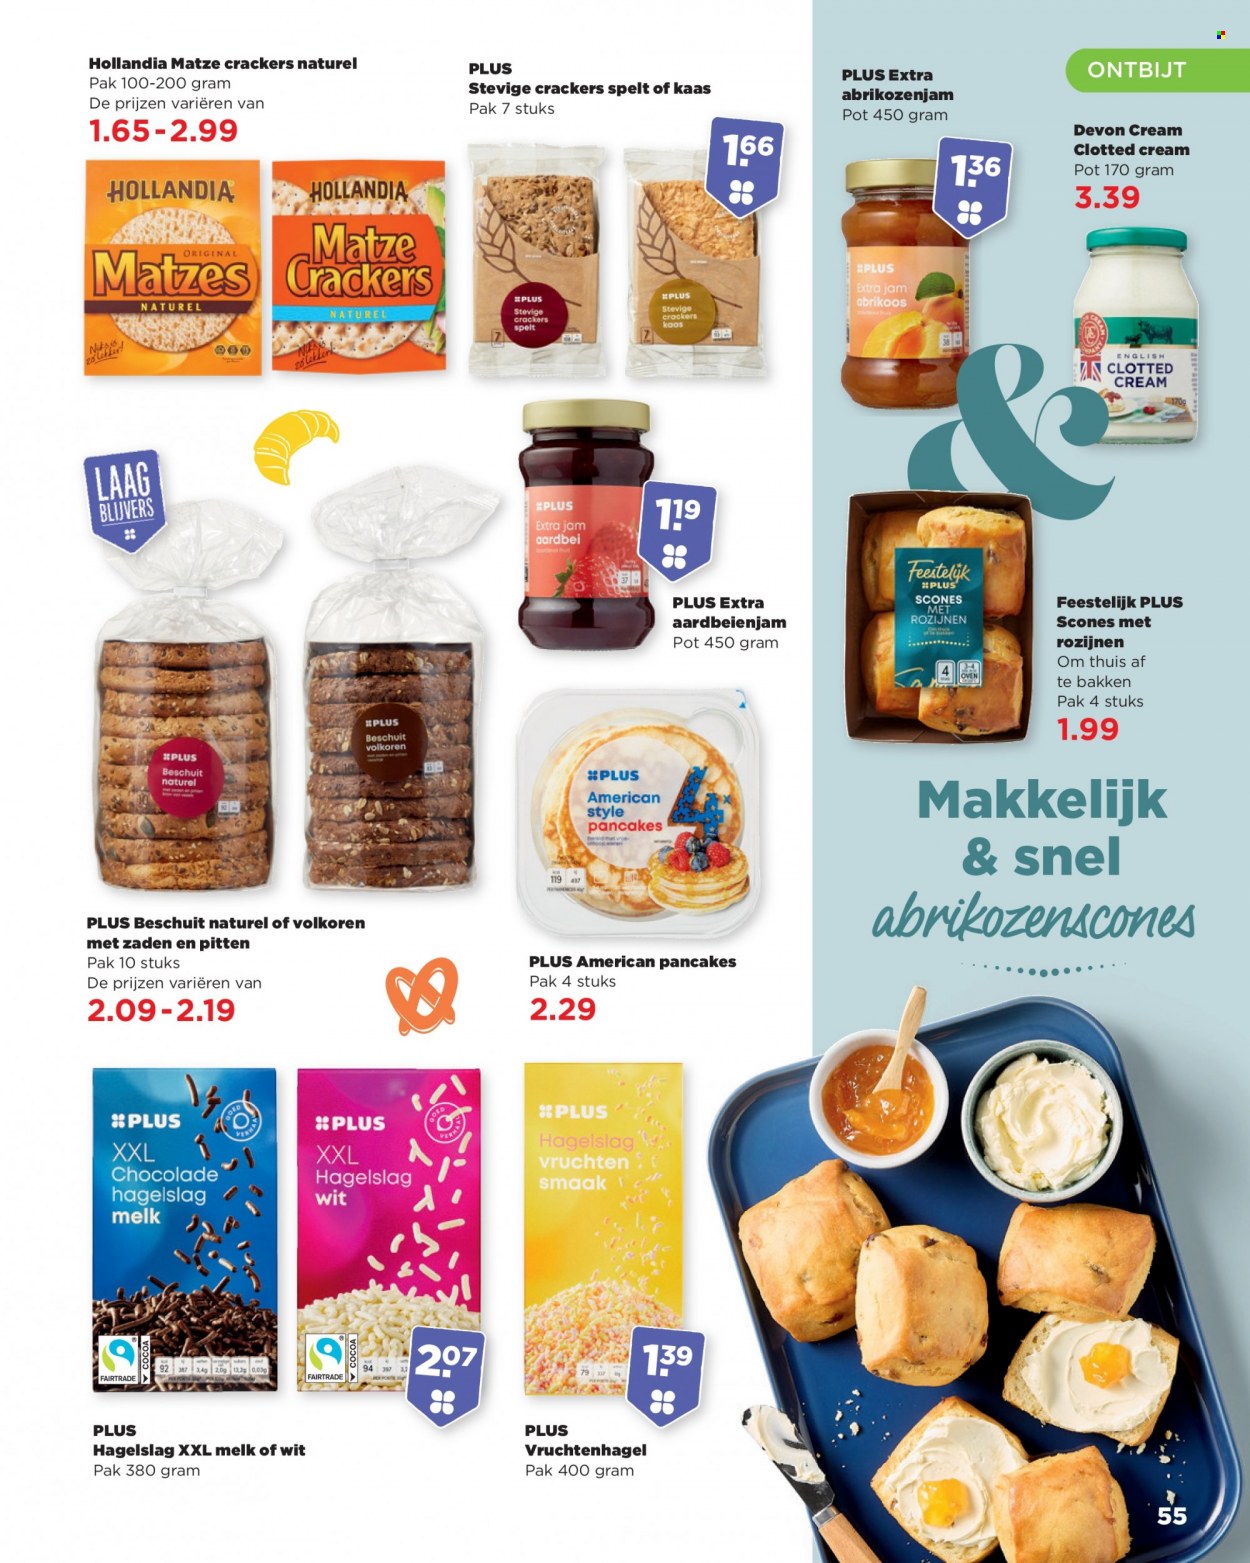 thumbnail - Plus-aanbieding -  producten in de aanbieding - scones, kaas, chocolade, crackers, Spelt, aardbeienjam, rozijnen. Pagina 55.